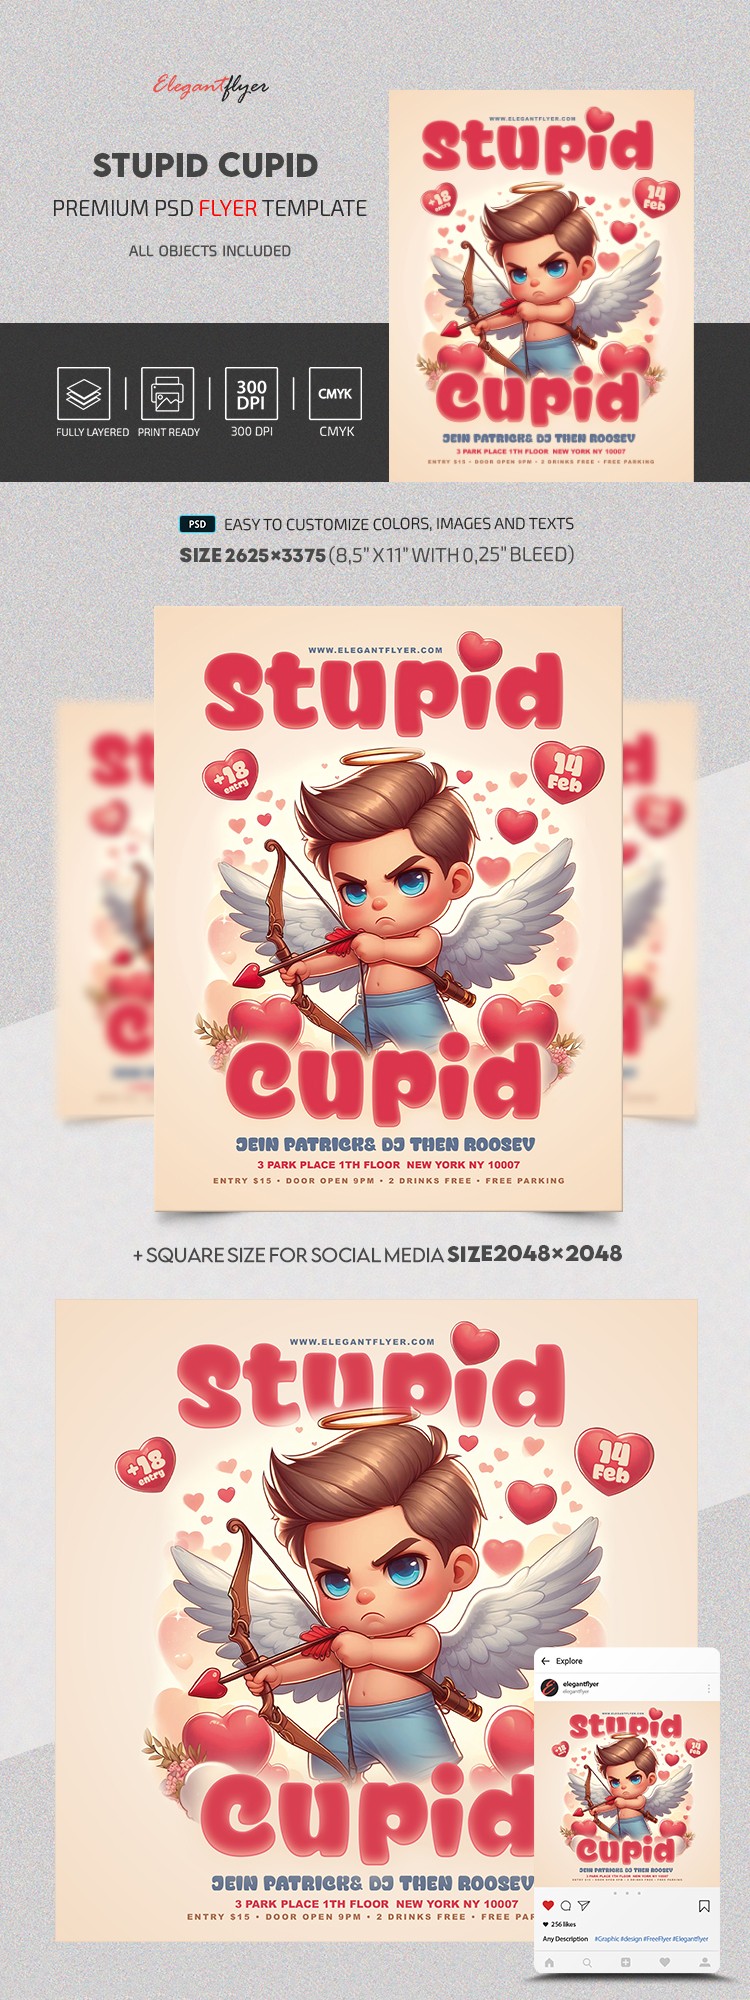 Estúpido Cupido by ElegantFlyer